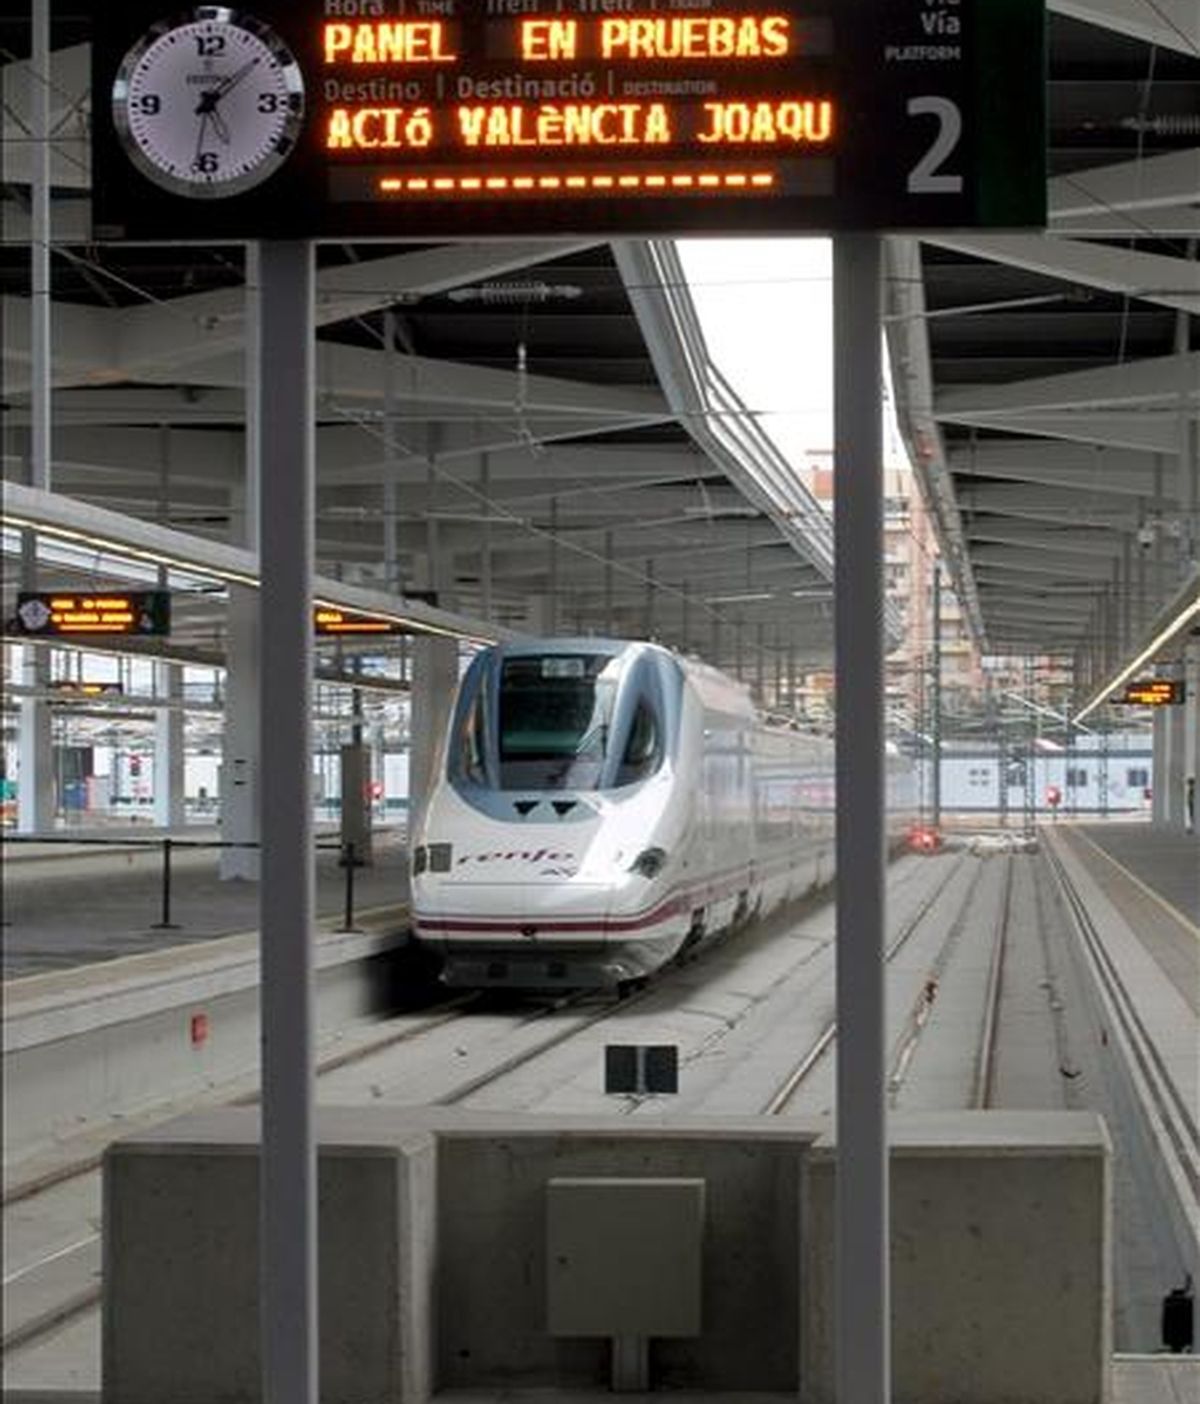 El AVE Madrid-Valencia hace su entrada en la estación de Valencia durante su primer viaje en pruebas, el pasado 13 de octubre. EFE/Archivo